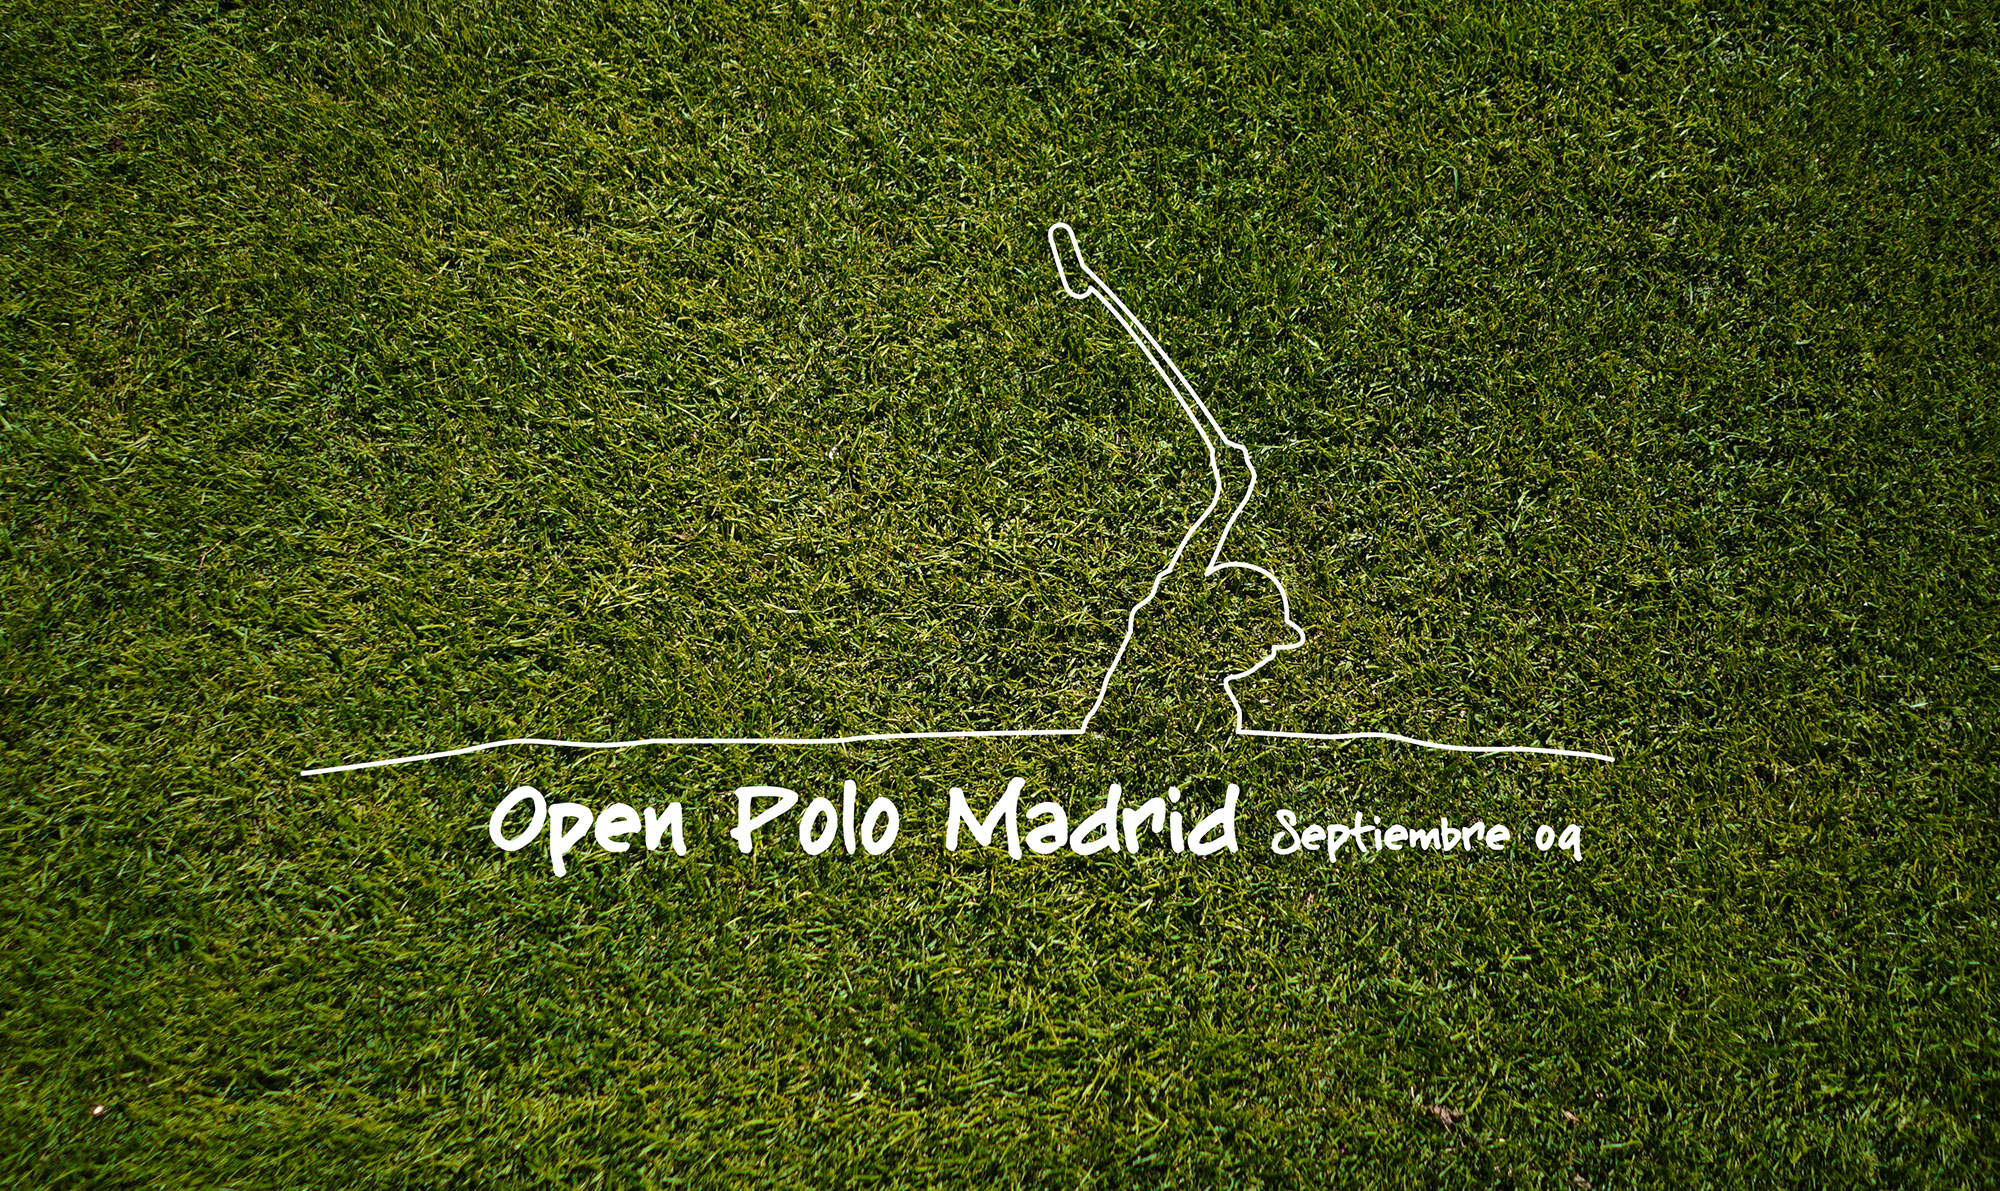 Logotipo del Open Polo Madrid